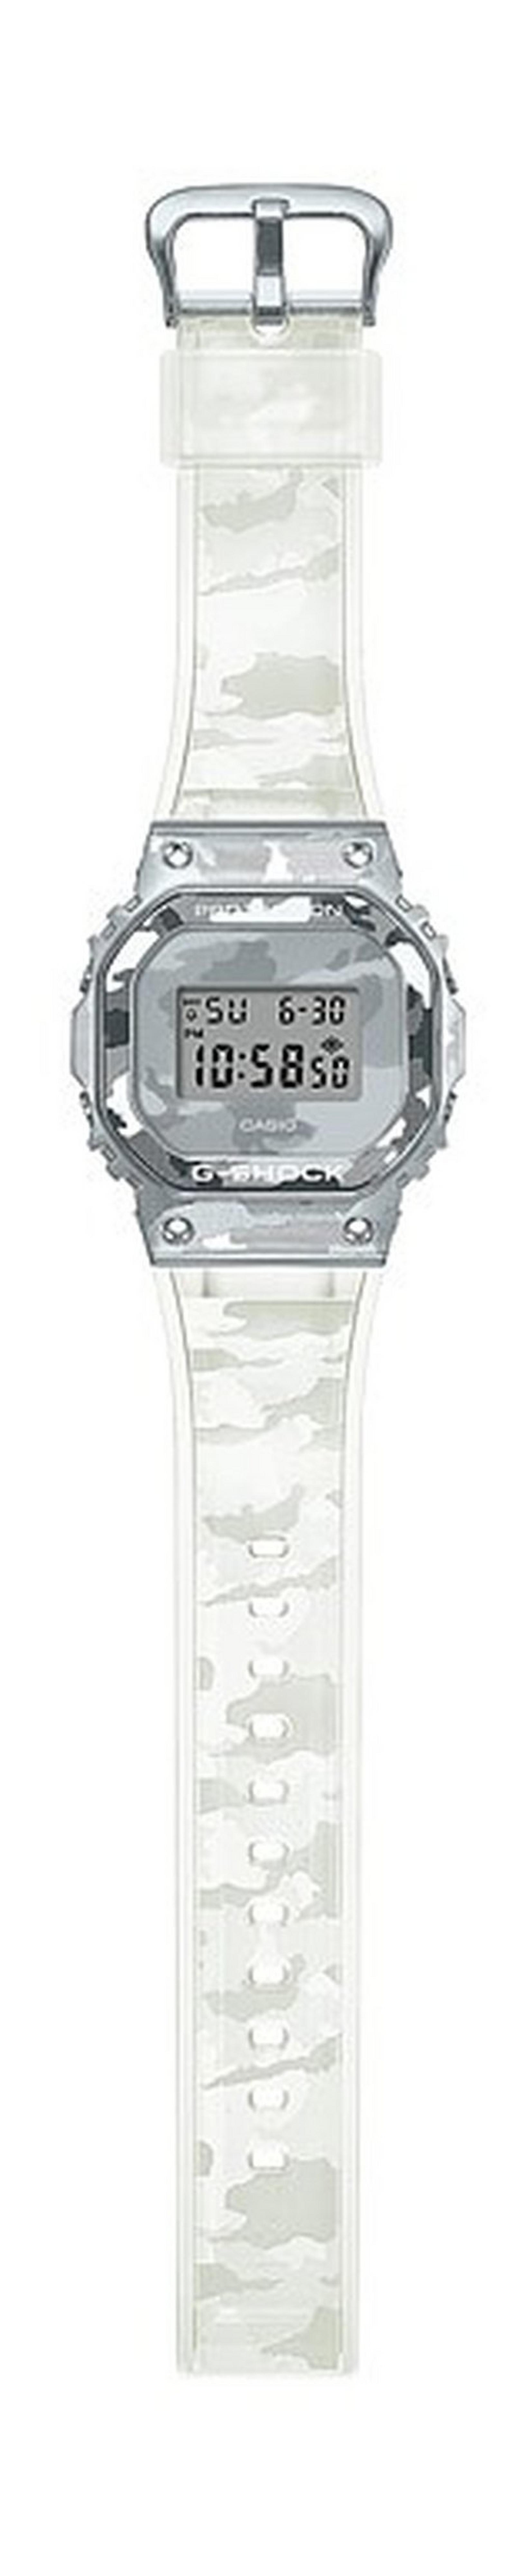 ساعة جي شوك كاجوال- للرجال حجم 50 ملم- (GM-5600SCM-1DR)